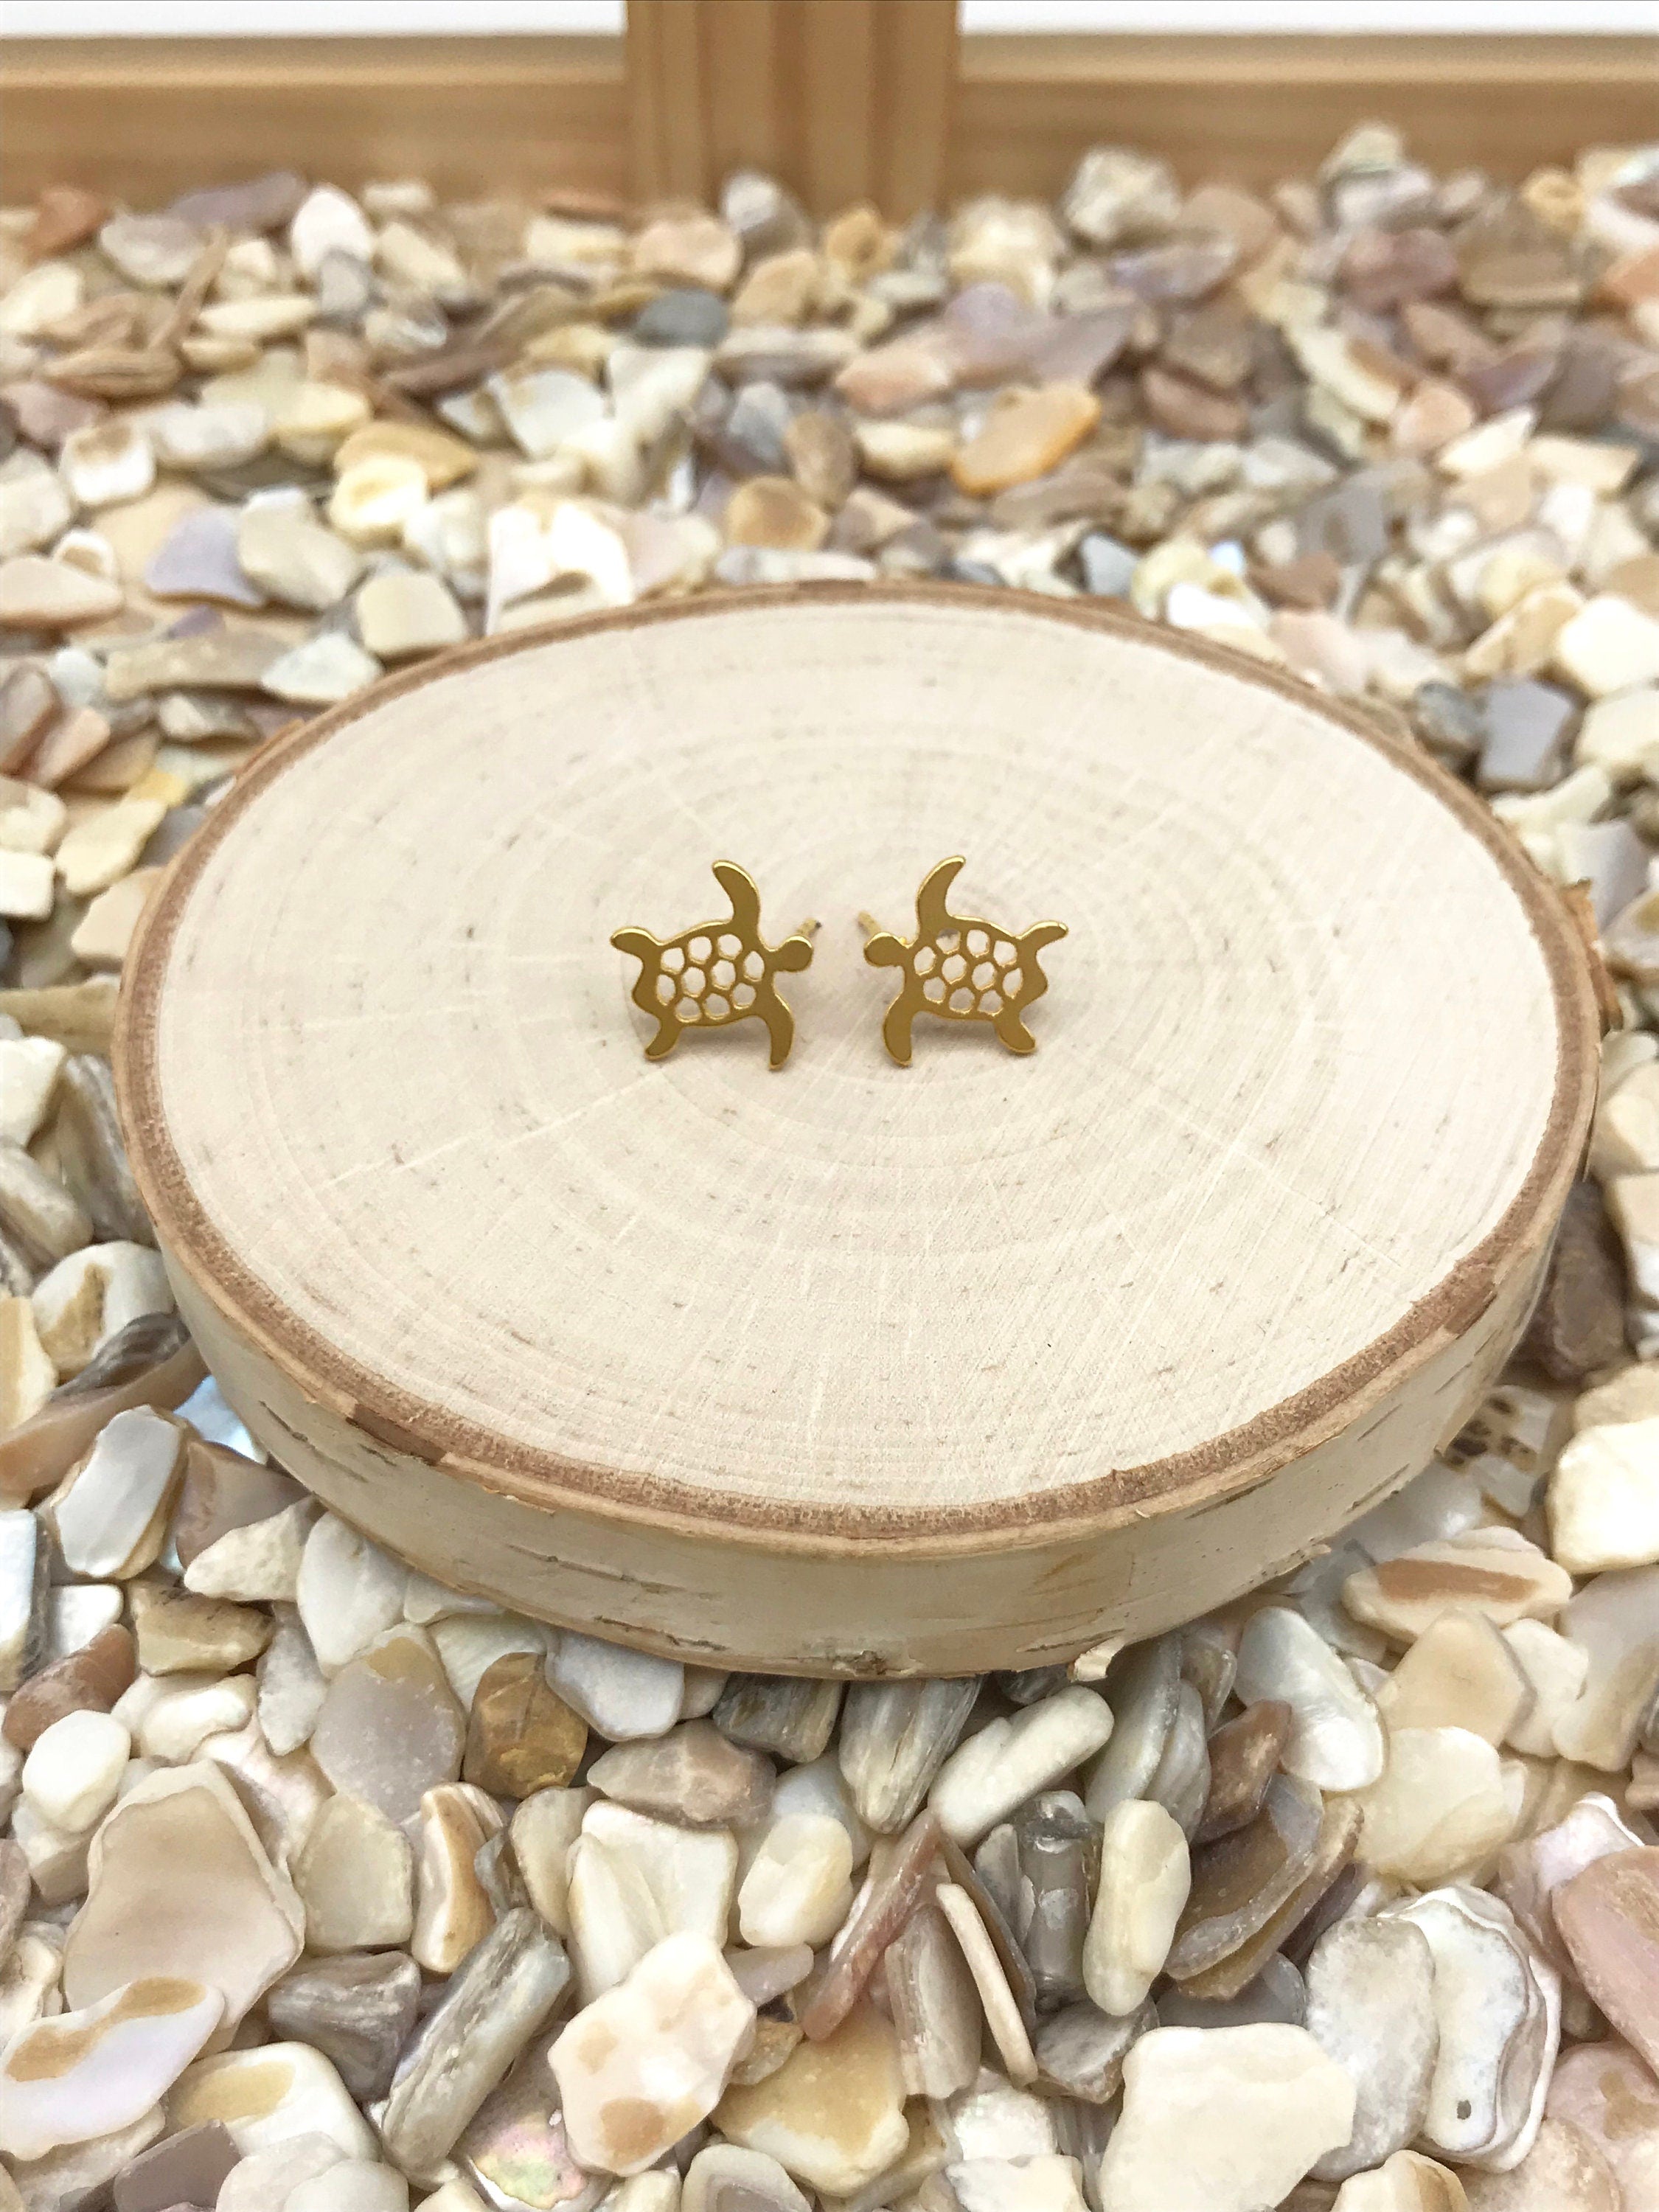 TURTLE EARRINGS !! Gold Earrings, cute earrings, Stud Earrings, earrings